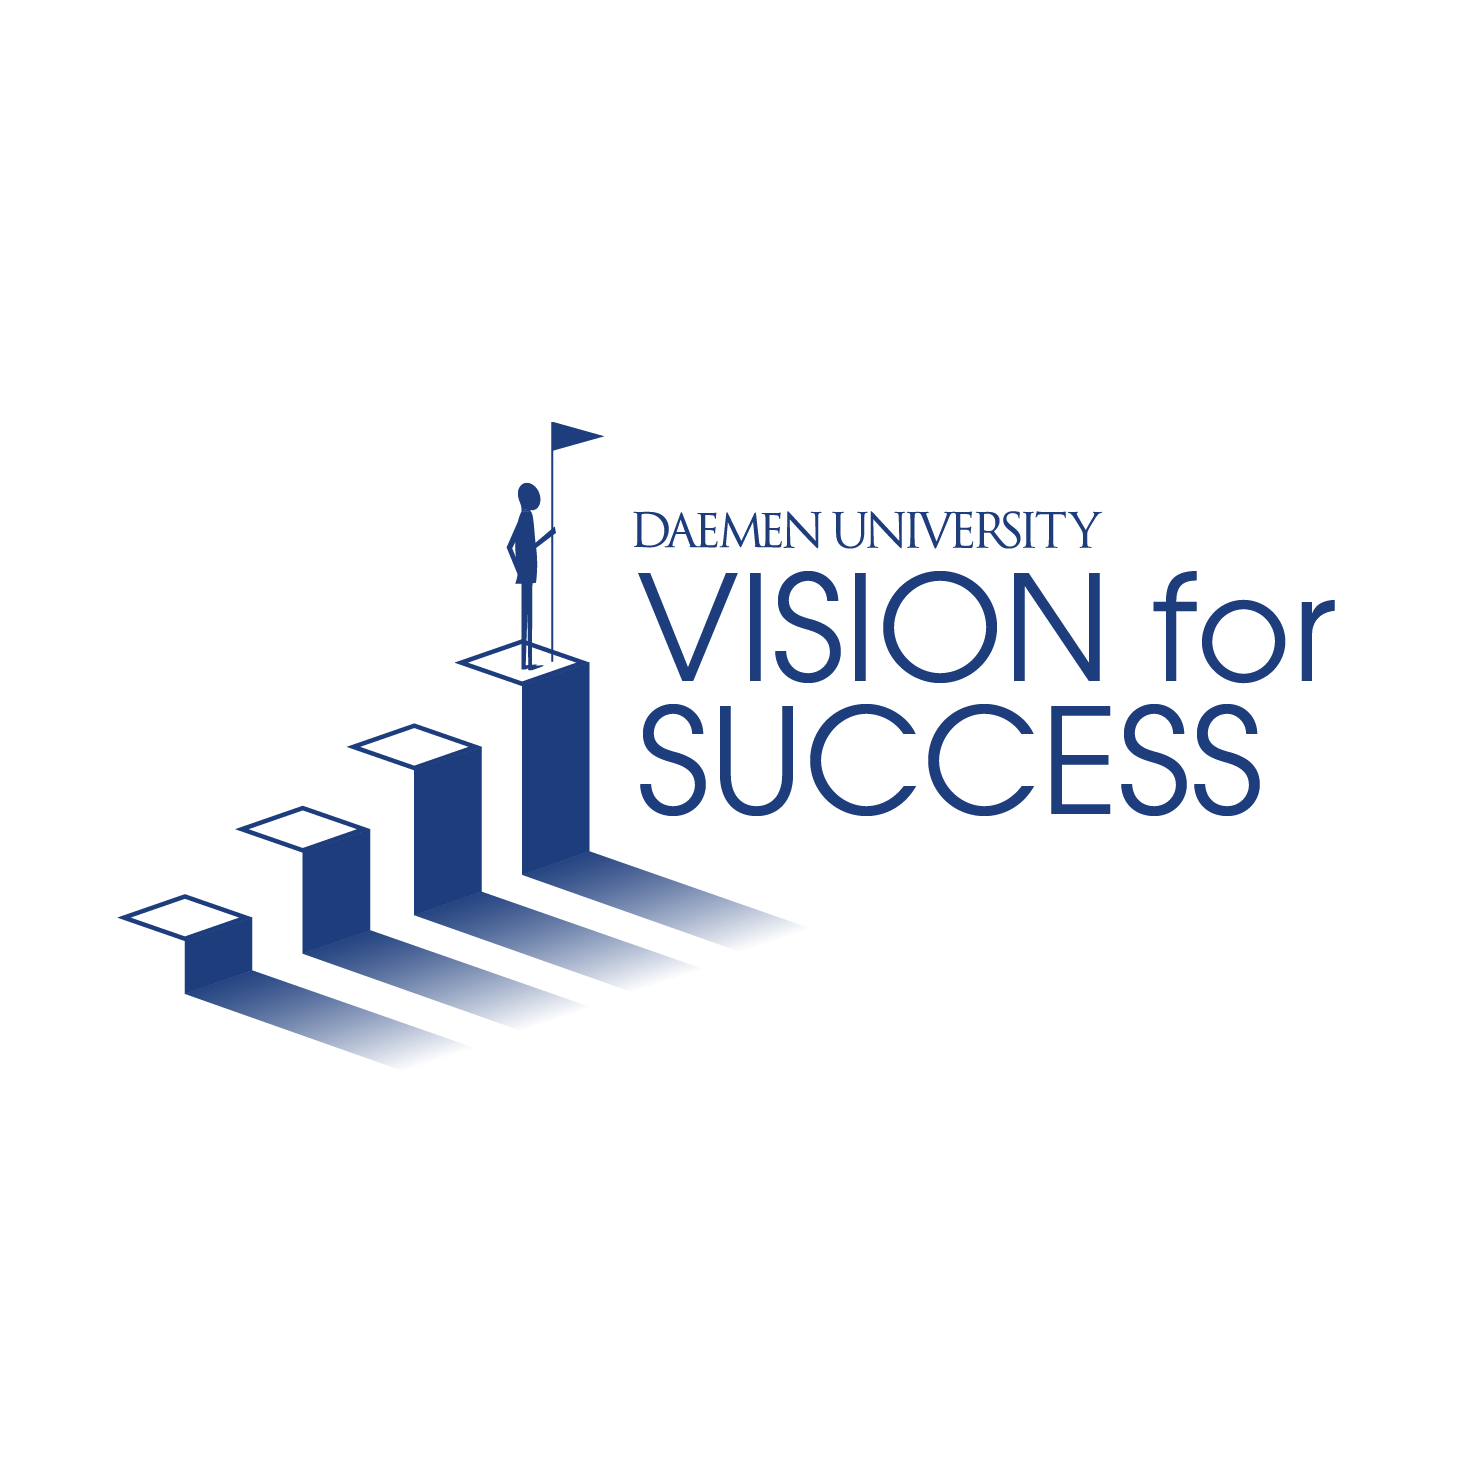 麻豆国产AV Vision For Success blue stairs with person-like image a top holding flag